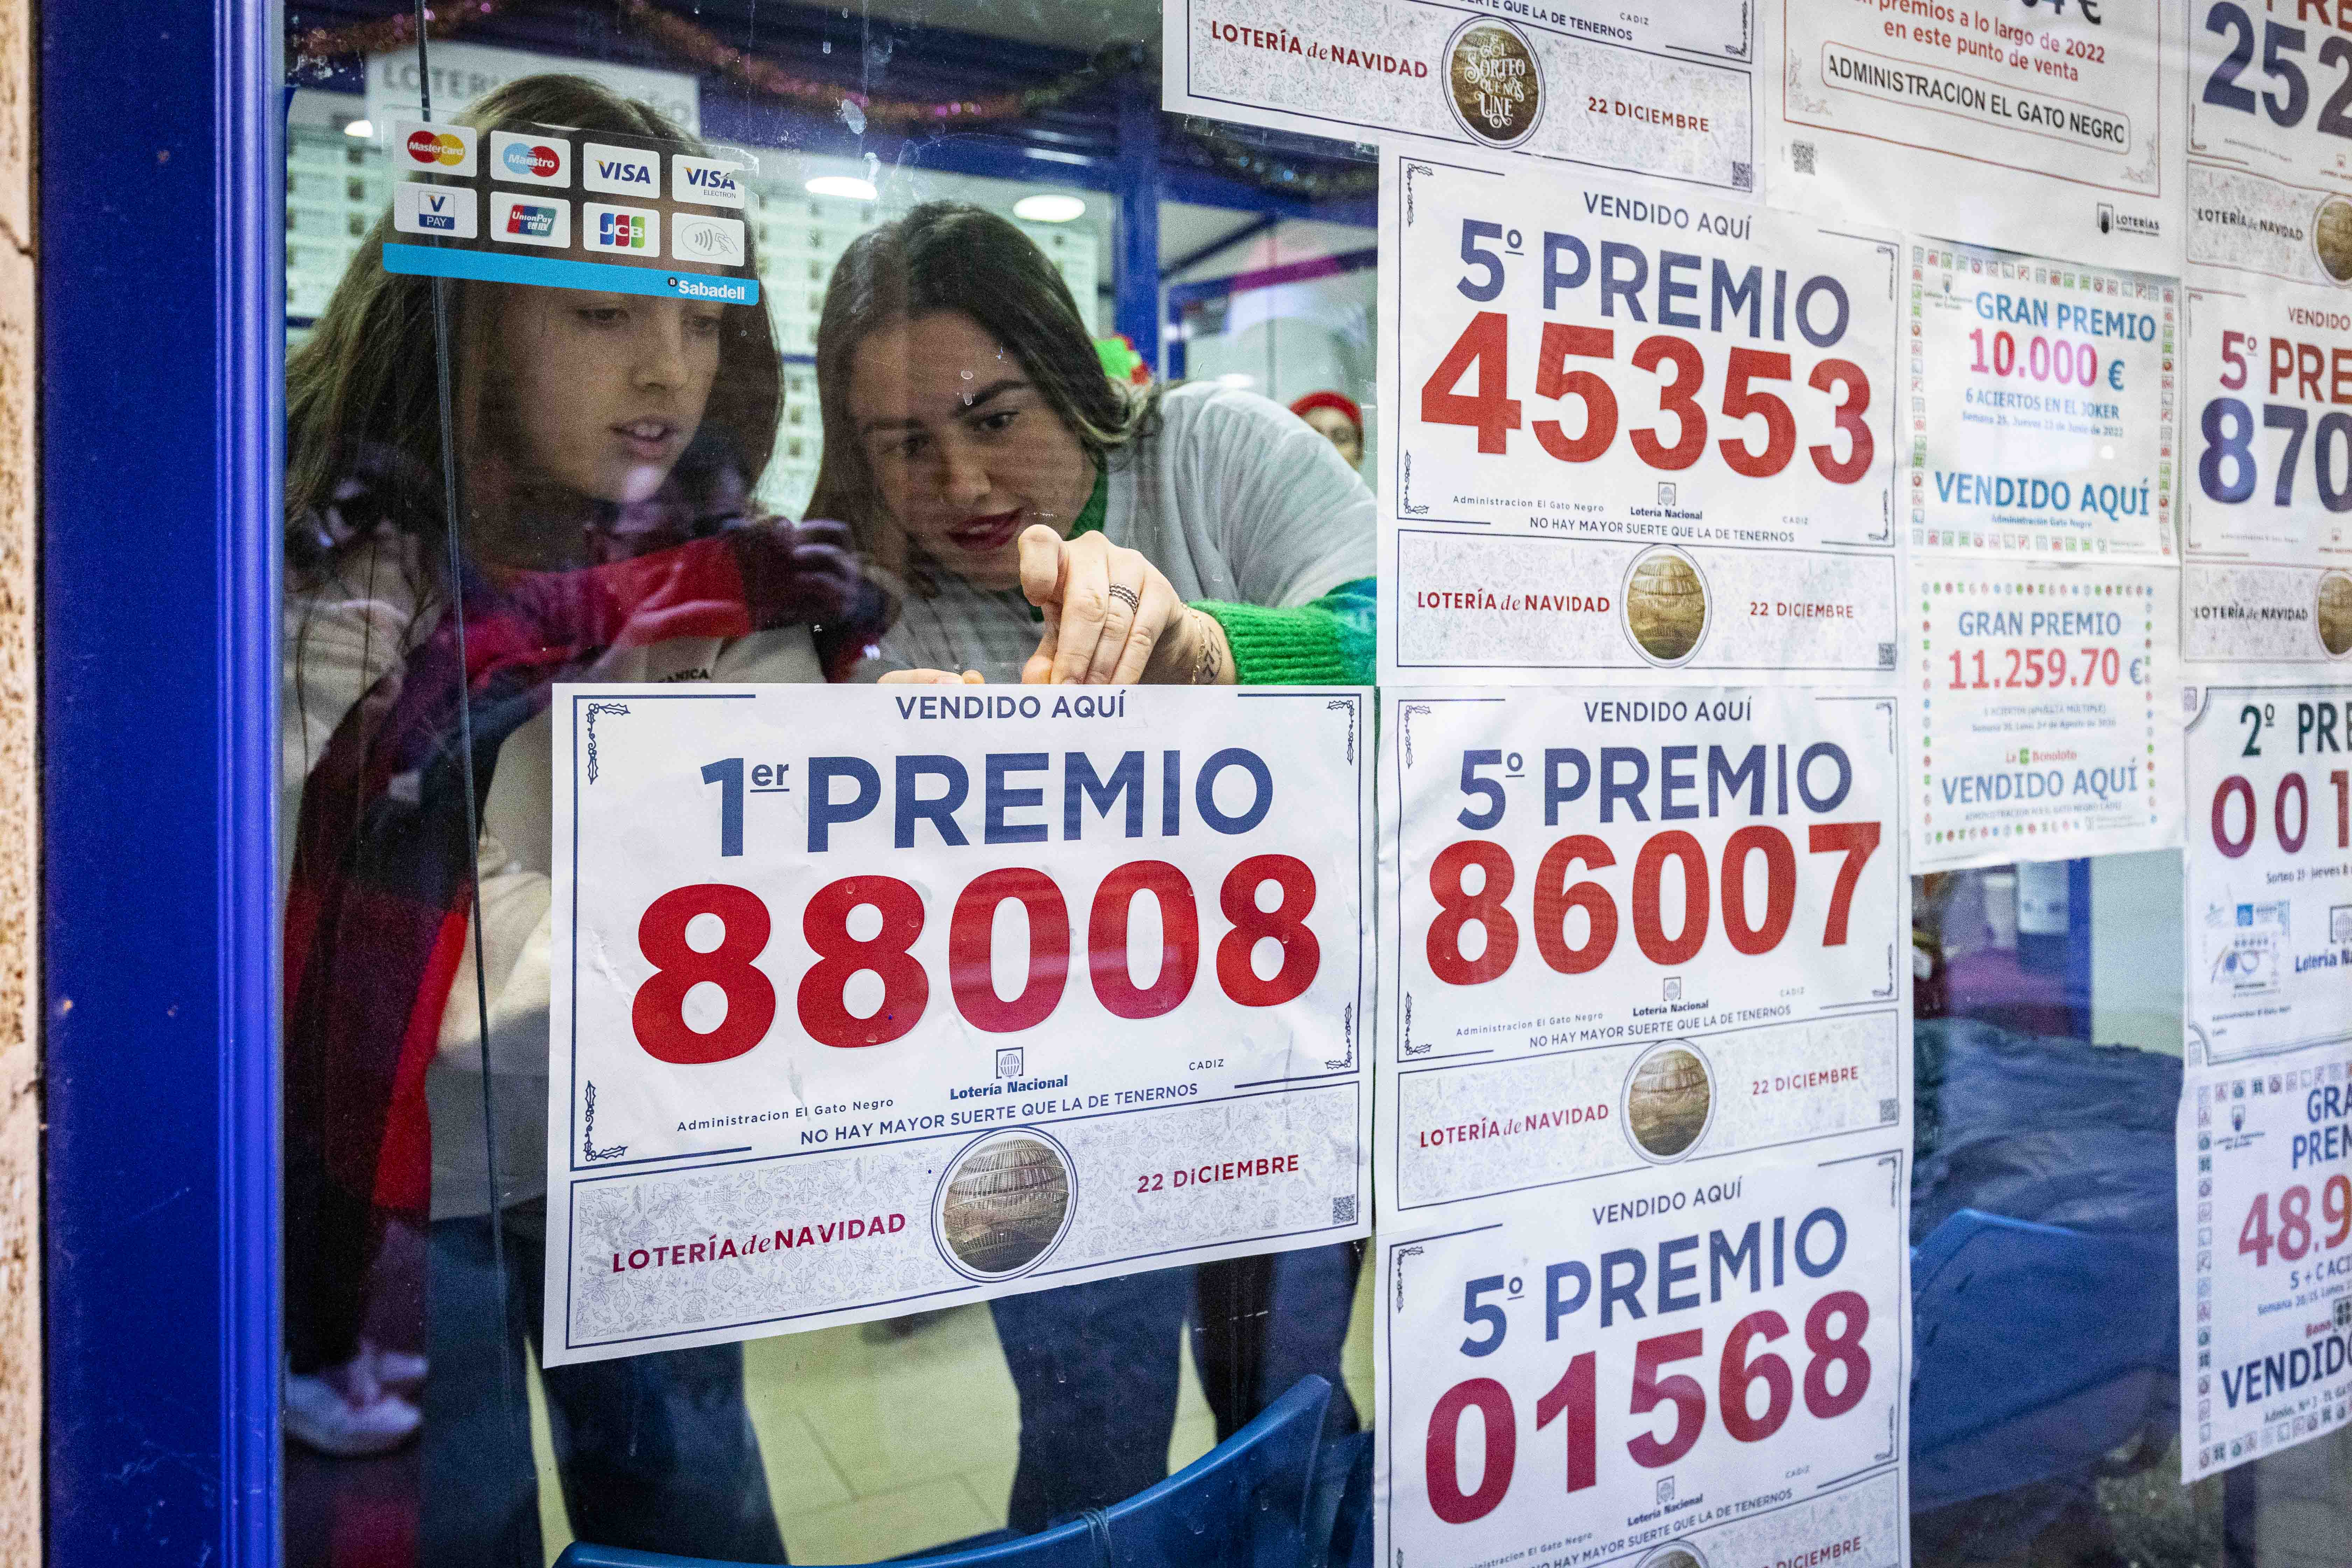 Imagen de 'El Gordo' de la lotería en Cádiz.